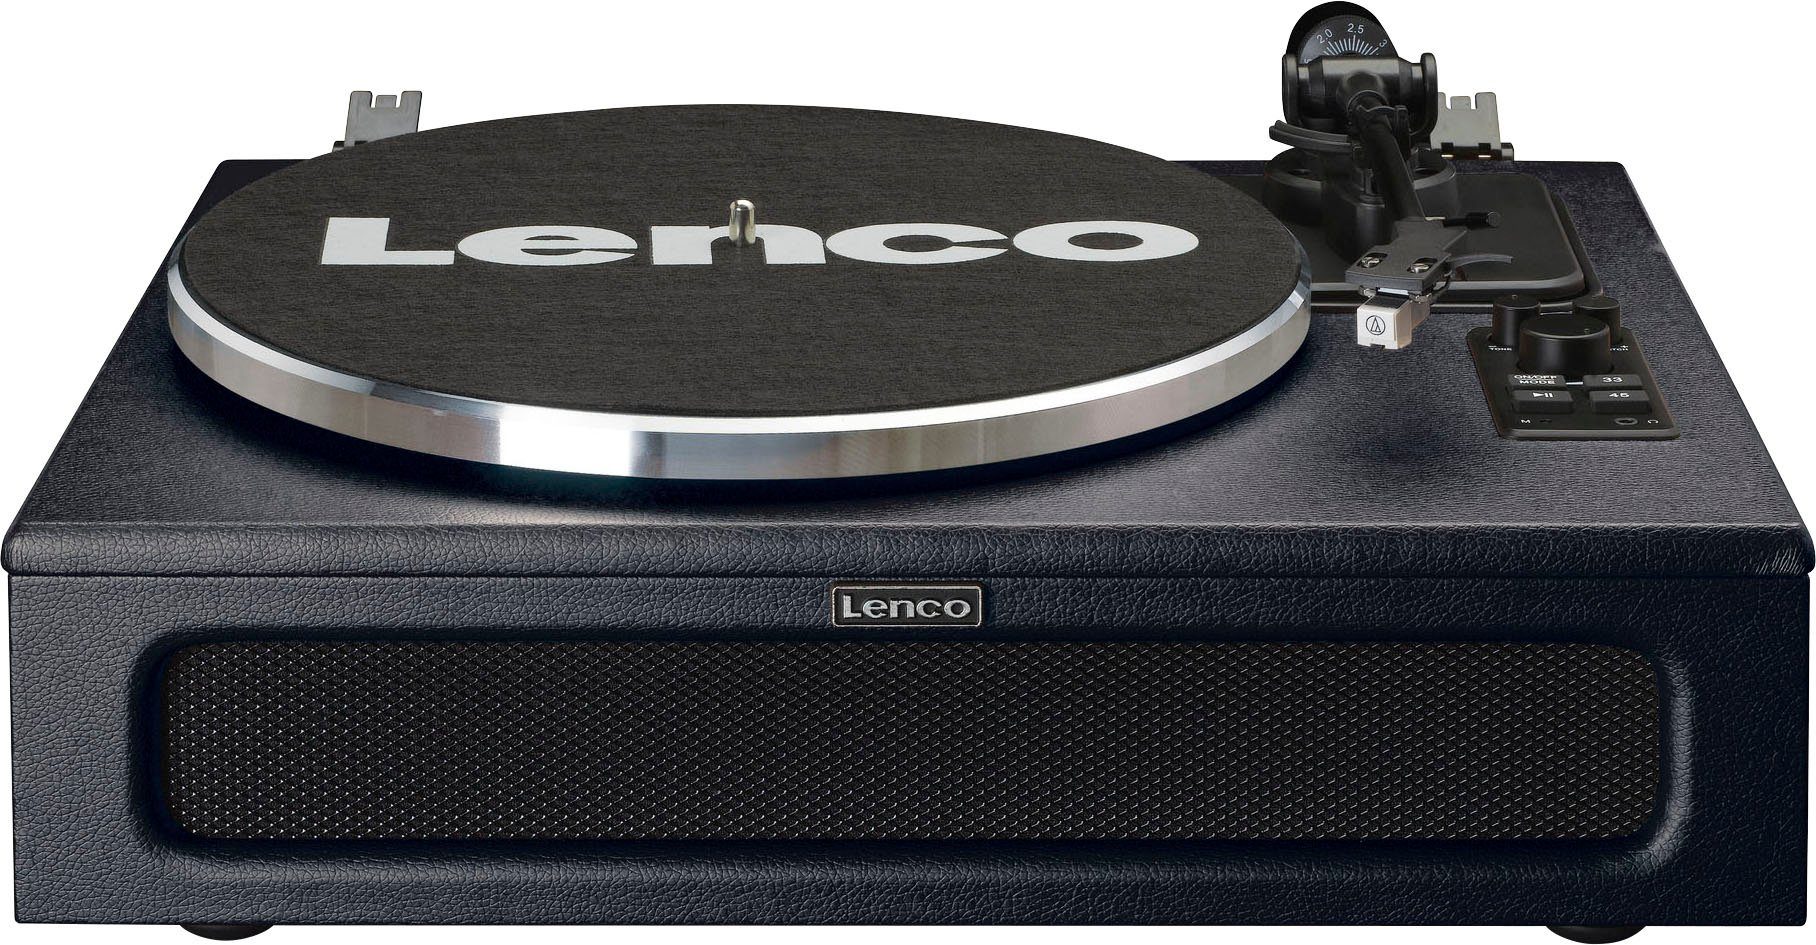 Plattenspieler Lenco schwarz LS-430 Plattenspieler 4 mit Lautsprechern (Riemenantrieb)